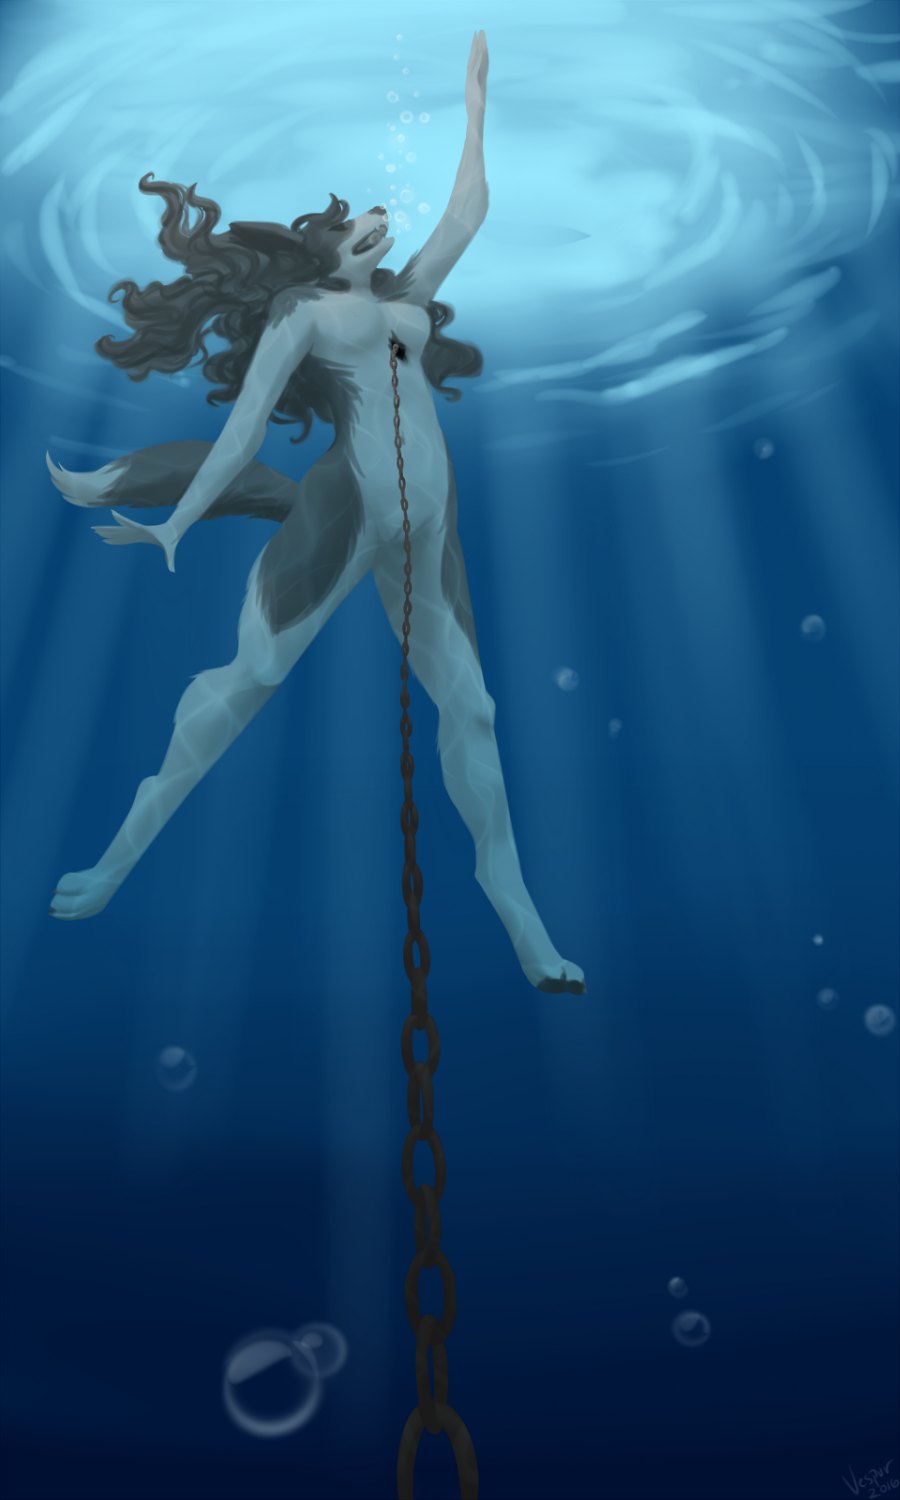 Almost drowning girl hogtied underwater pool